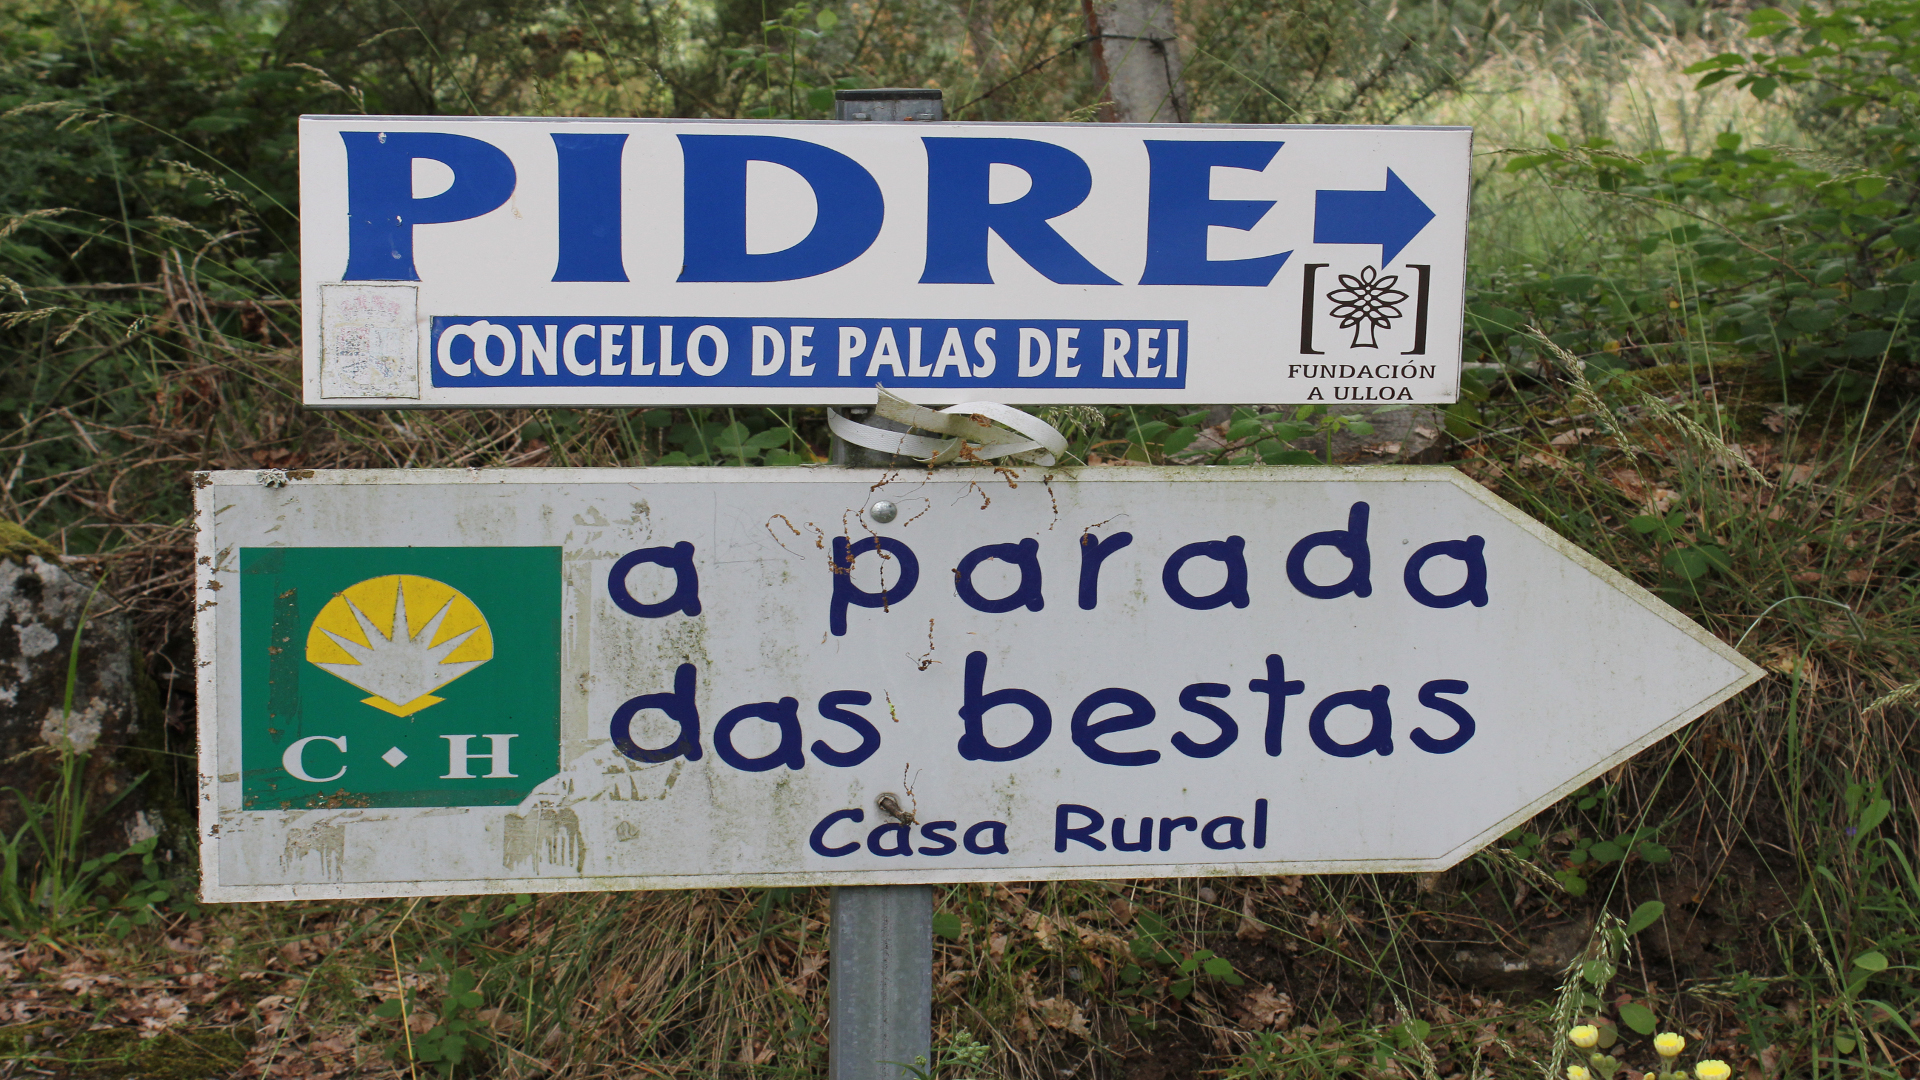 A Parada das Bestas quiere beneficiar a los ganaderos y agricultores de la comarca.1920